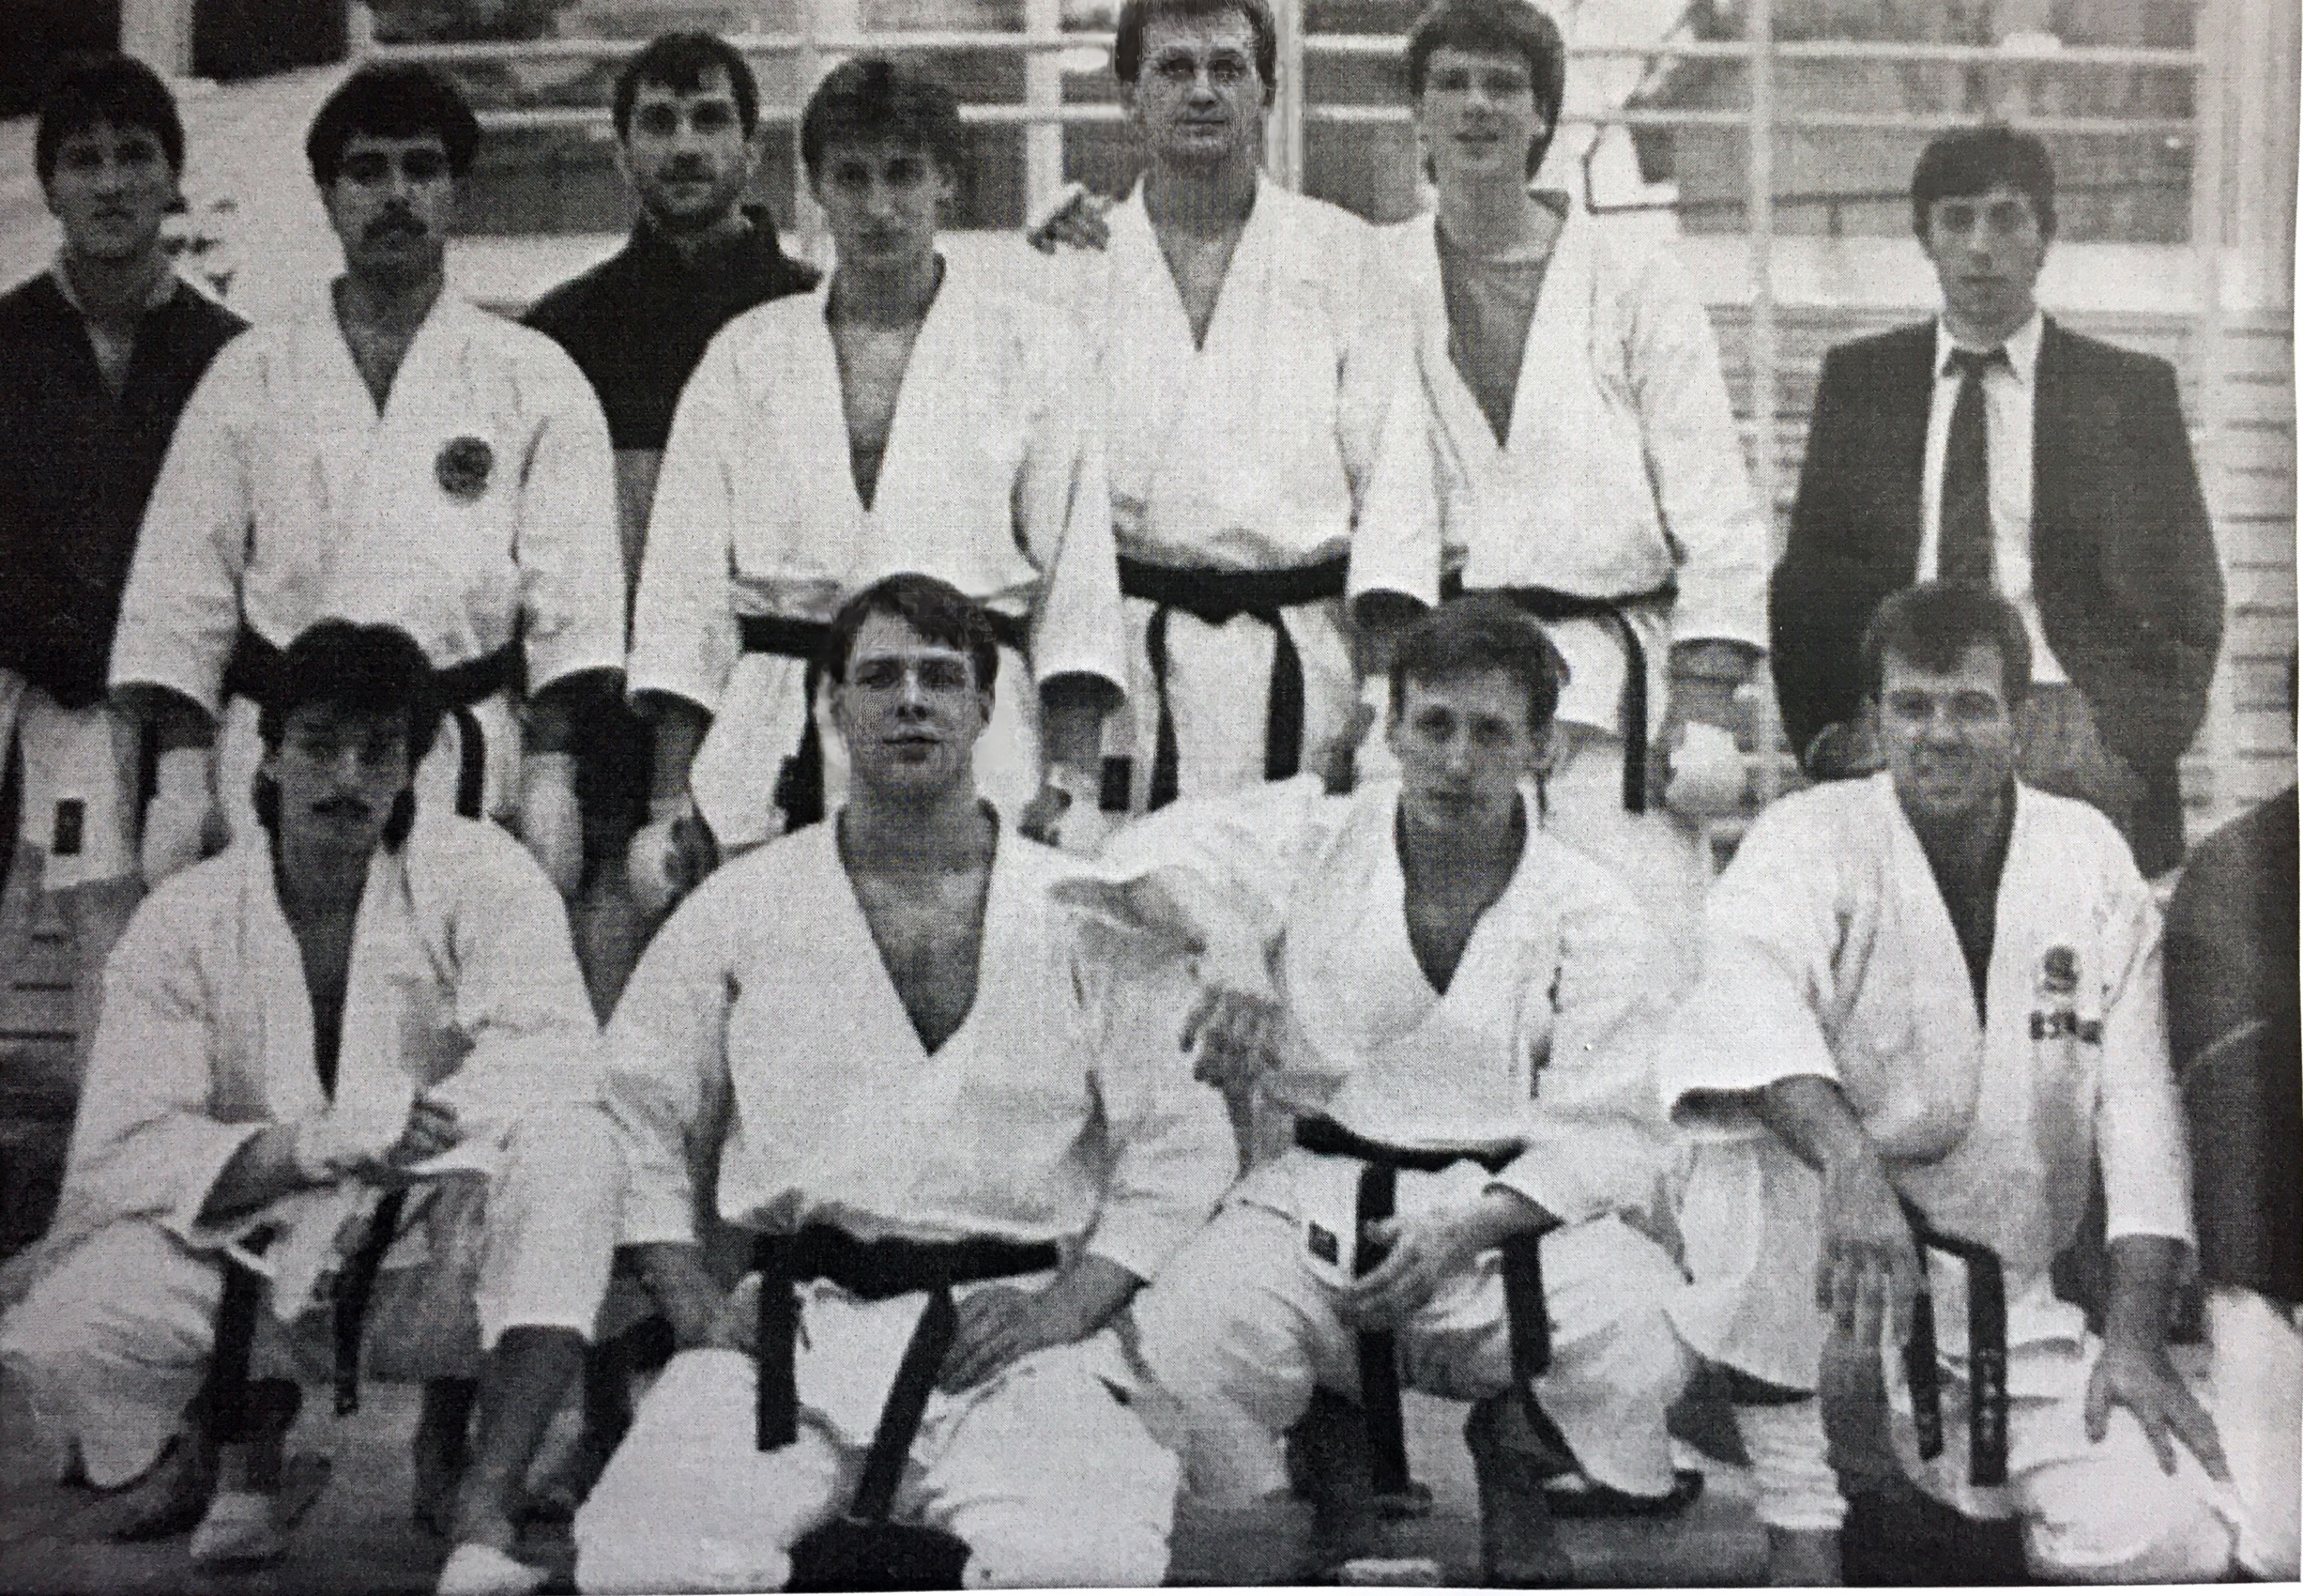 Judokan Kumitee Mannschaft 1989 ... der Rest der coolen Gang